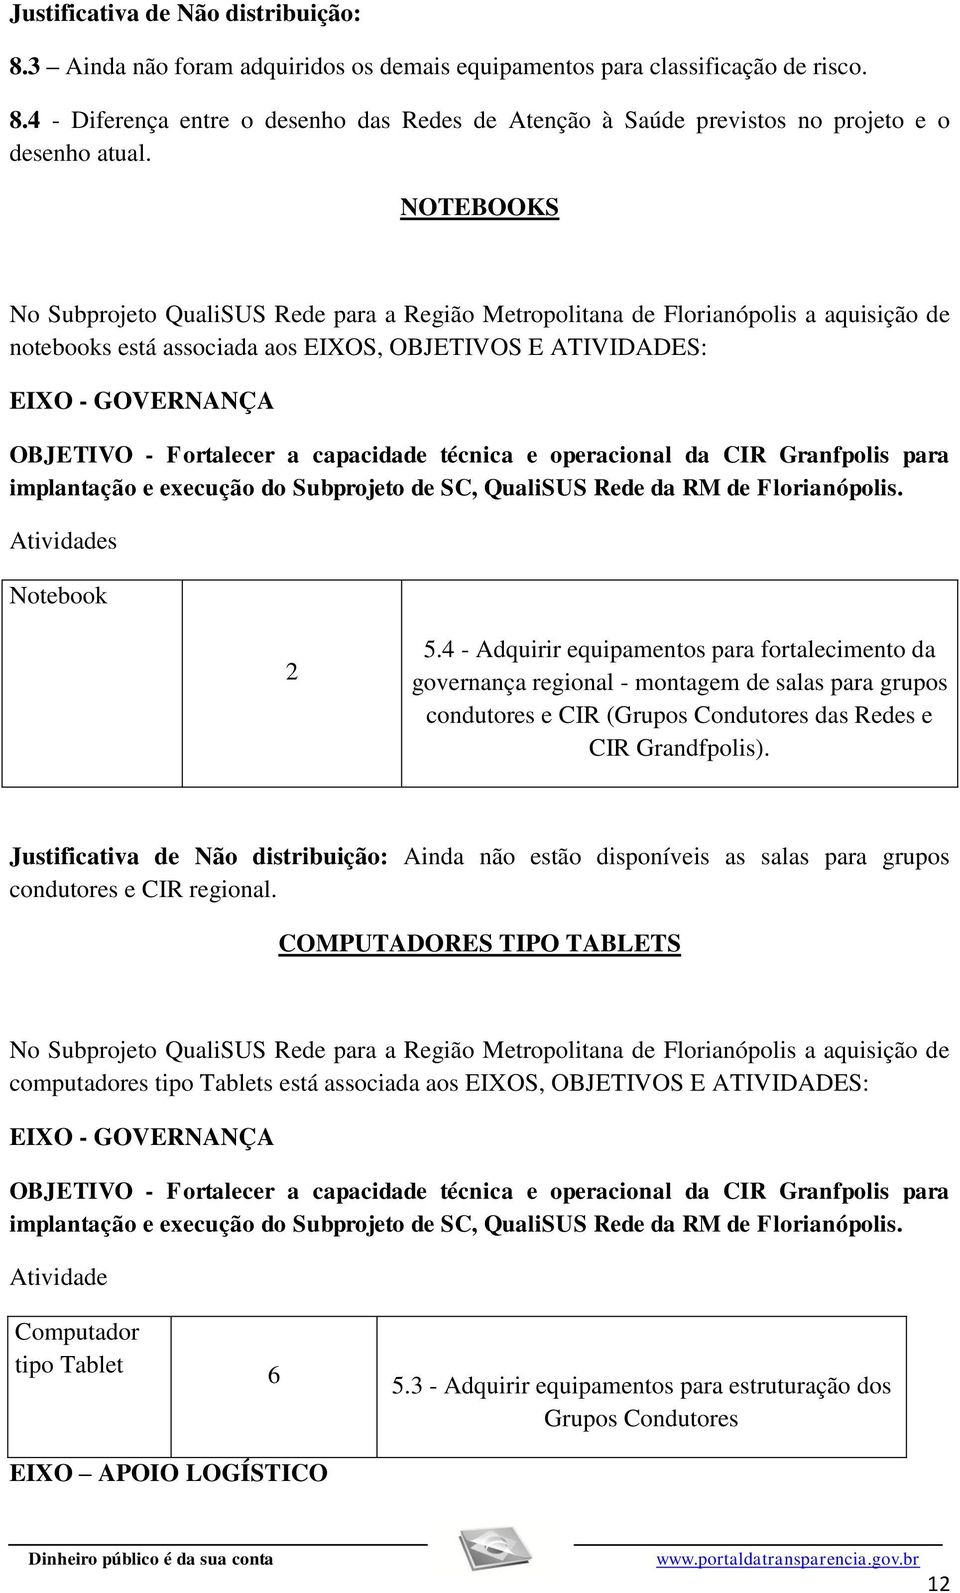 capacidade técnica e operacional da CIR Granfpolis para implantação e execução do Subprojeto de SC, QualiSUS Rede da RM de Florianópolis. s Notebook 2 5.